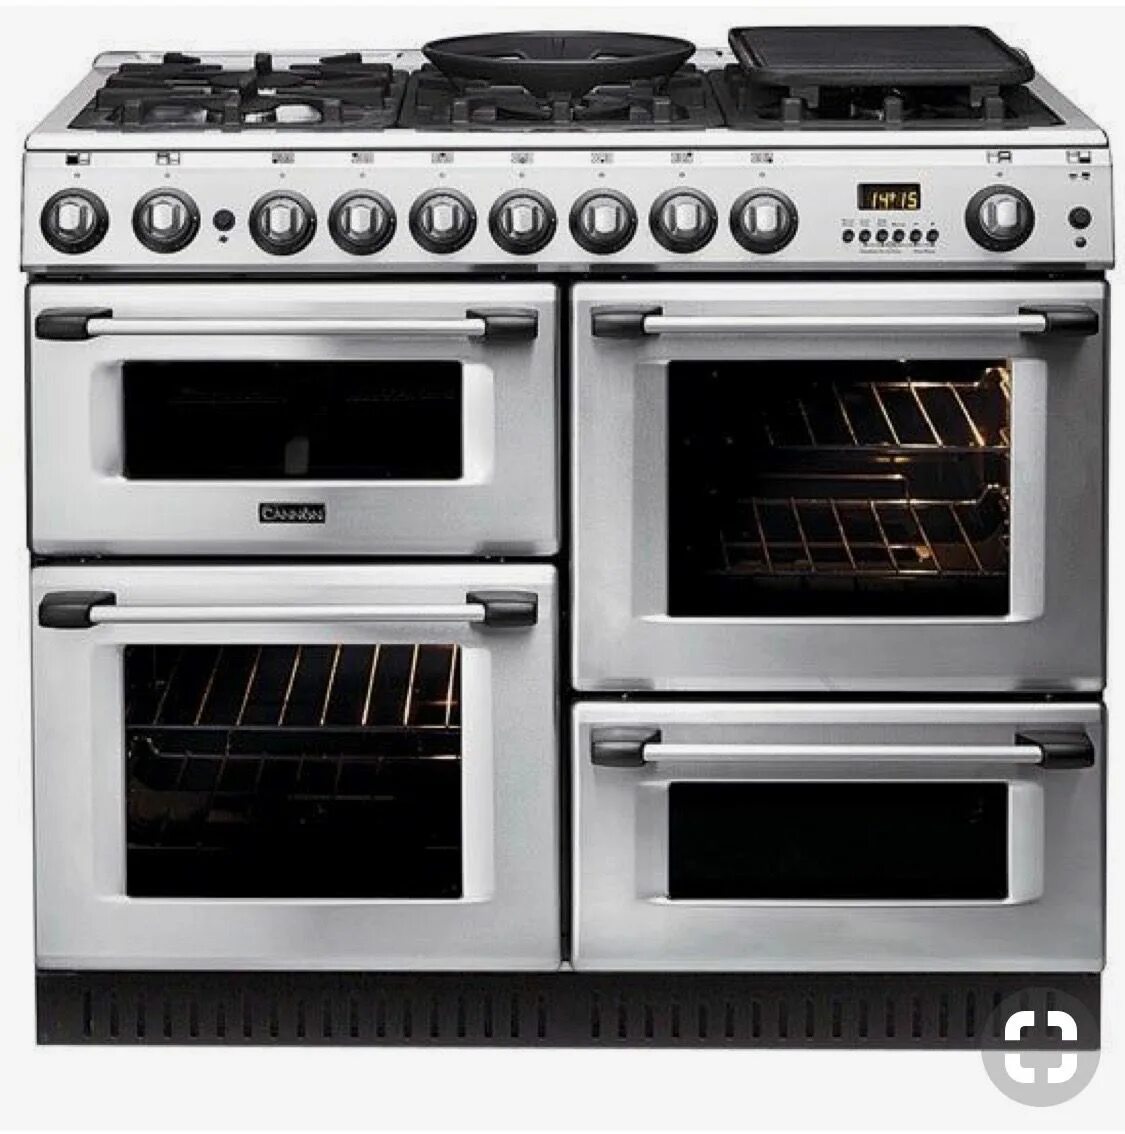 Топ электрических плит с духовкой. Electrolux Ekk 951301 x. Газовая плита с двумя духовками ms24израиль. Cooker – Stove – кухонная плита, печь.